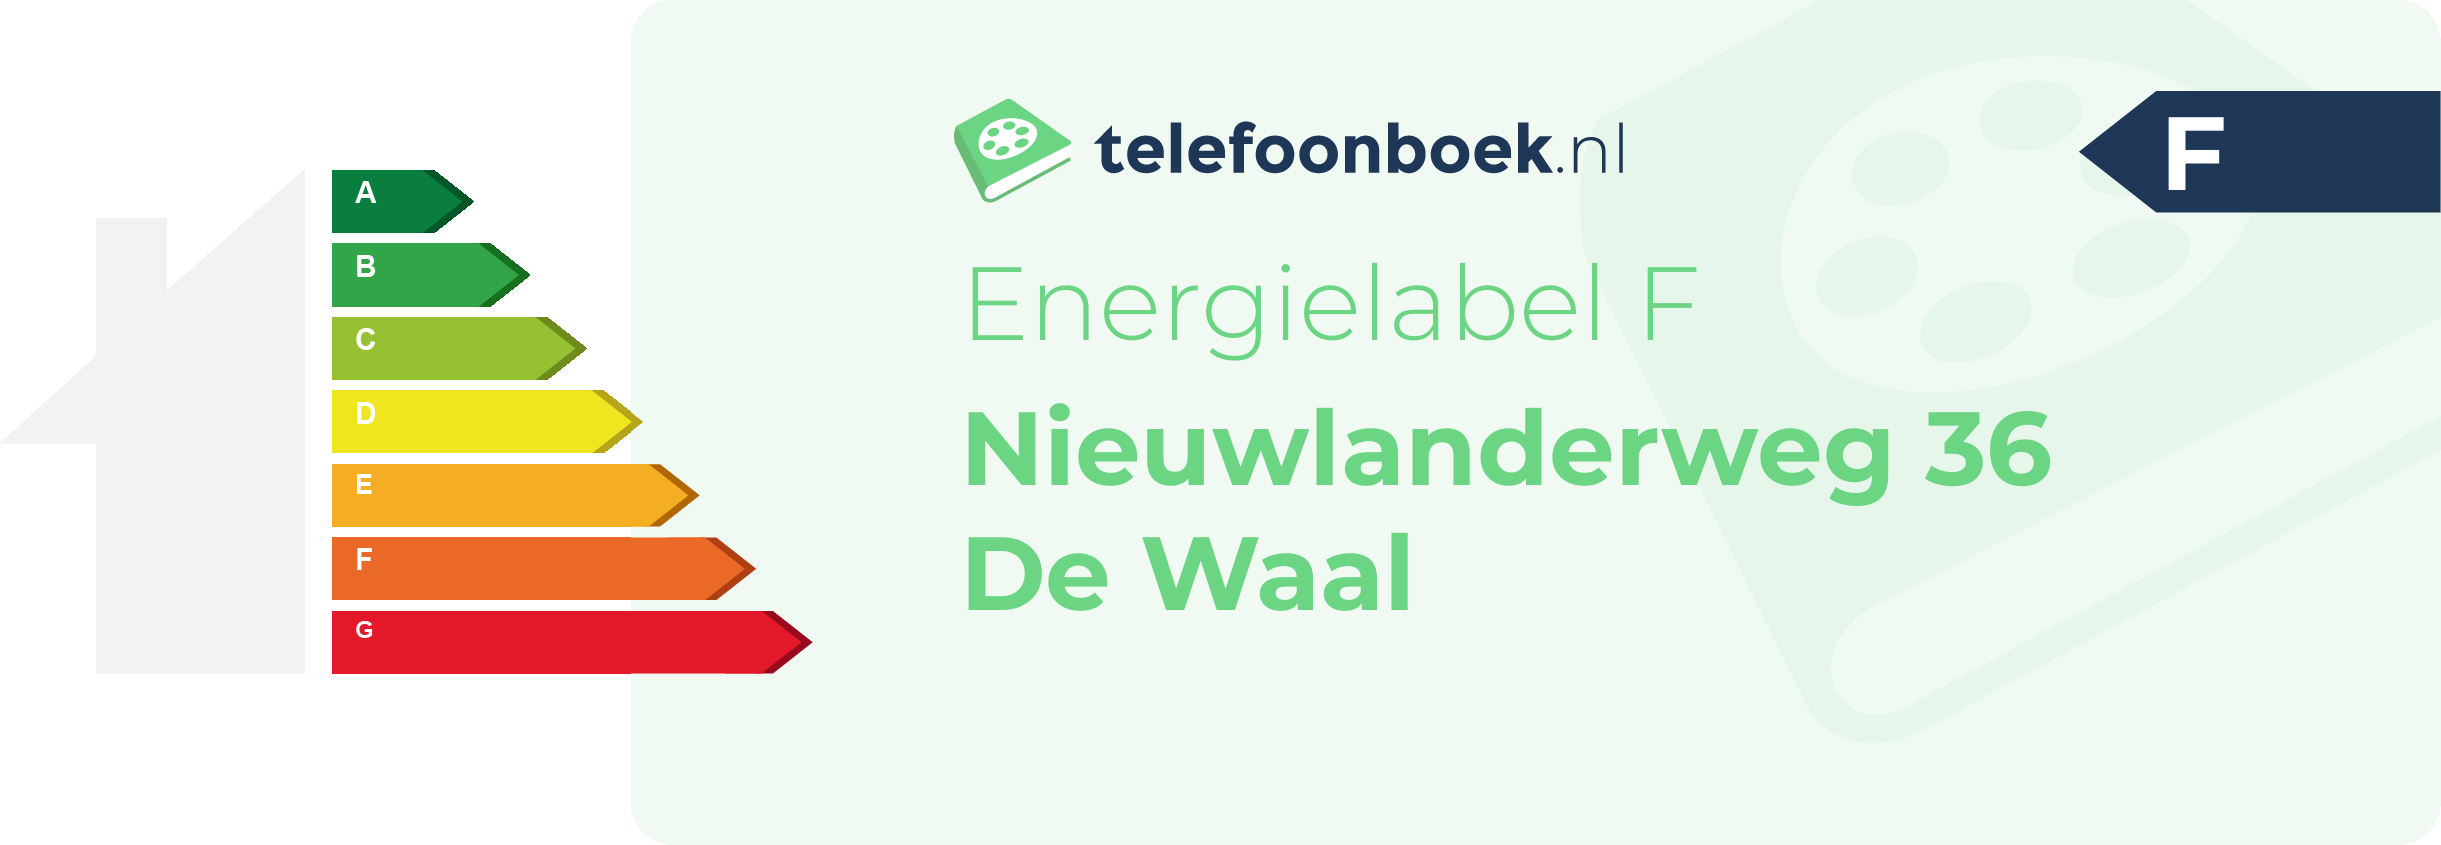 Energielabel Nieuwlanderweg 36 De Waal